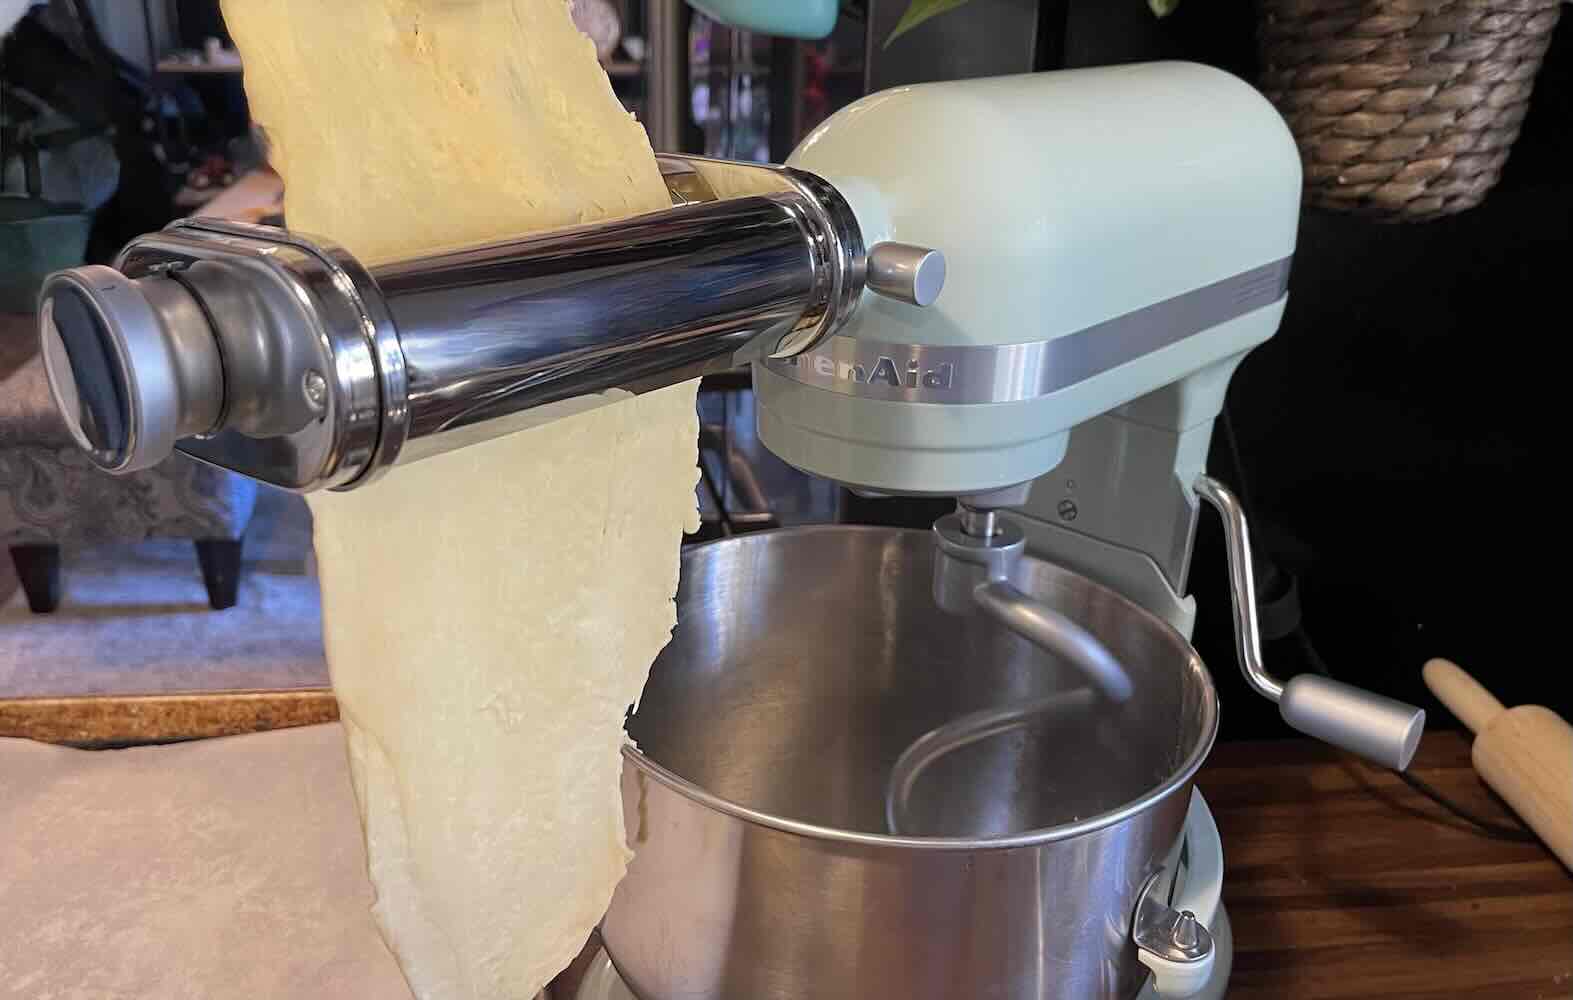 KitchenAid Pasta Attachment Roller & Cutter Set - Power Townsend